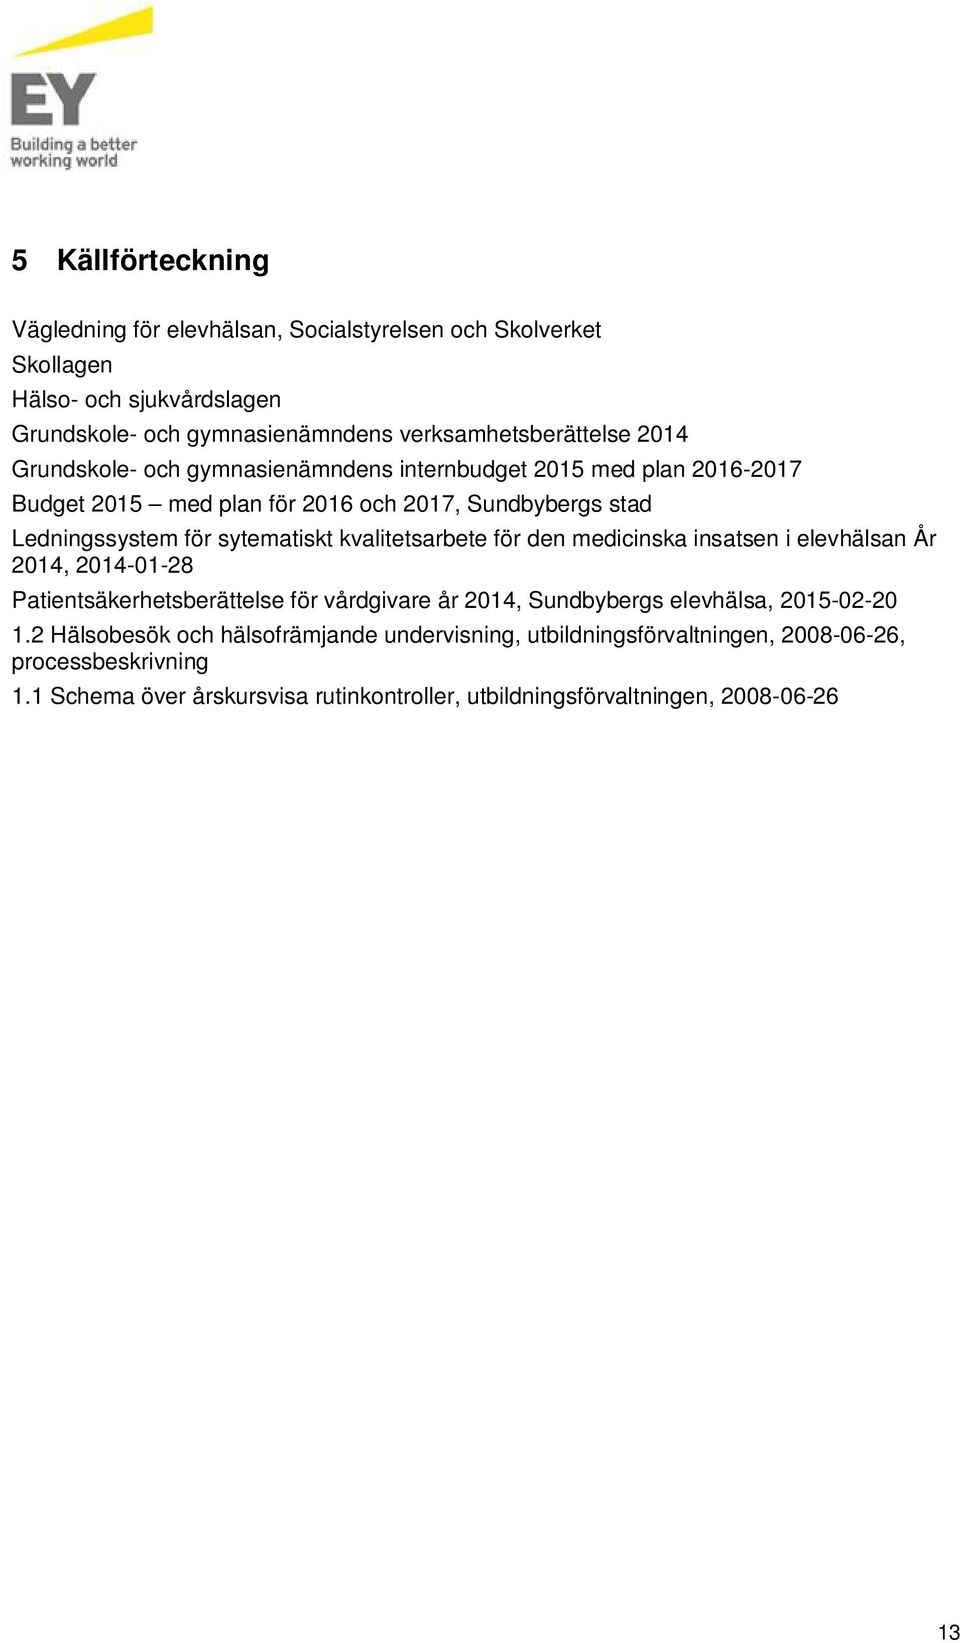 kvalitetsarbete för den medicinska insatsen i elevhälsan År 2014, 2014-01-28 Patientsäkerhetsberättelse för vårdgivare år 2014, Sundbybergs elevhälsa, 2015-02-20 1.